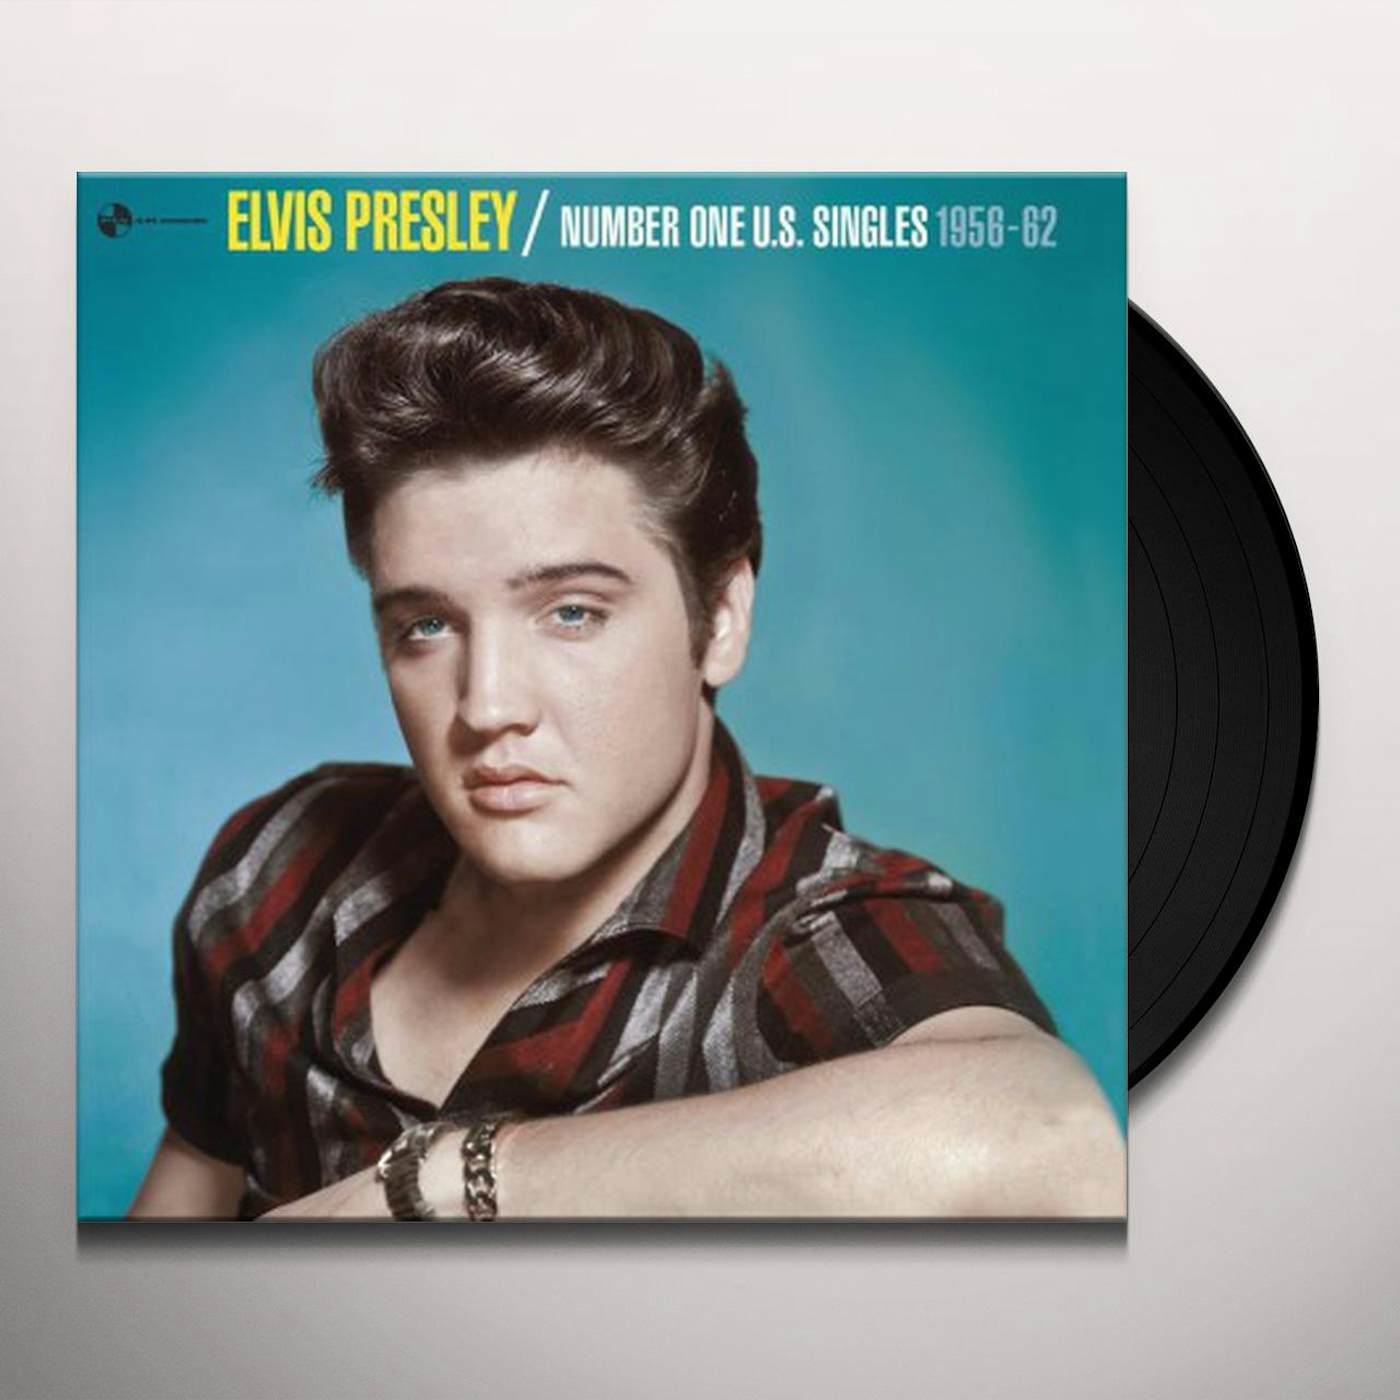 Elvis Presley Number One U.S. Singles 1956-1962 Vinyl Record